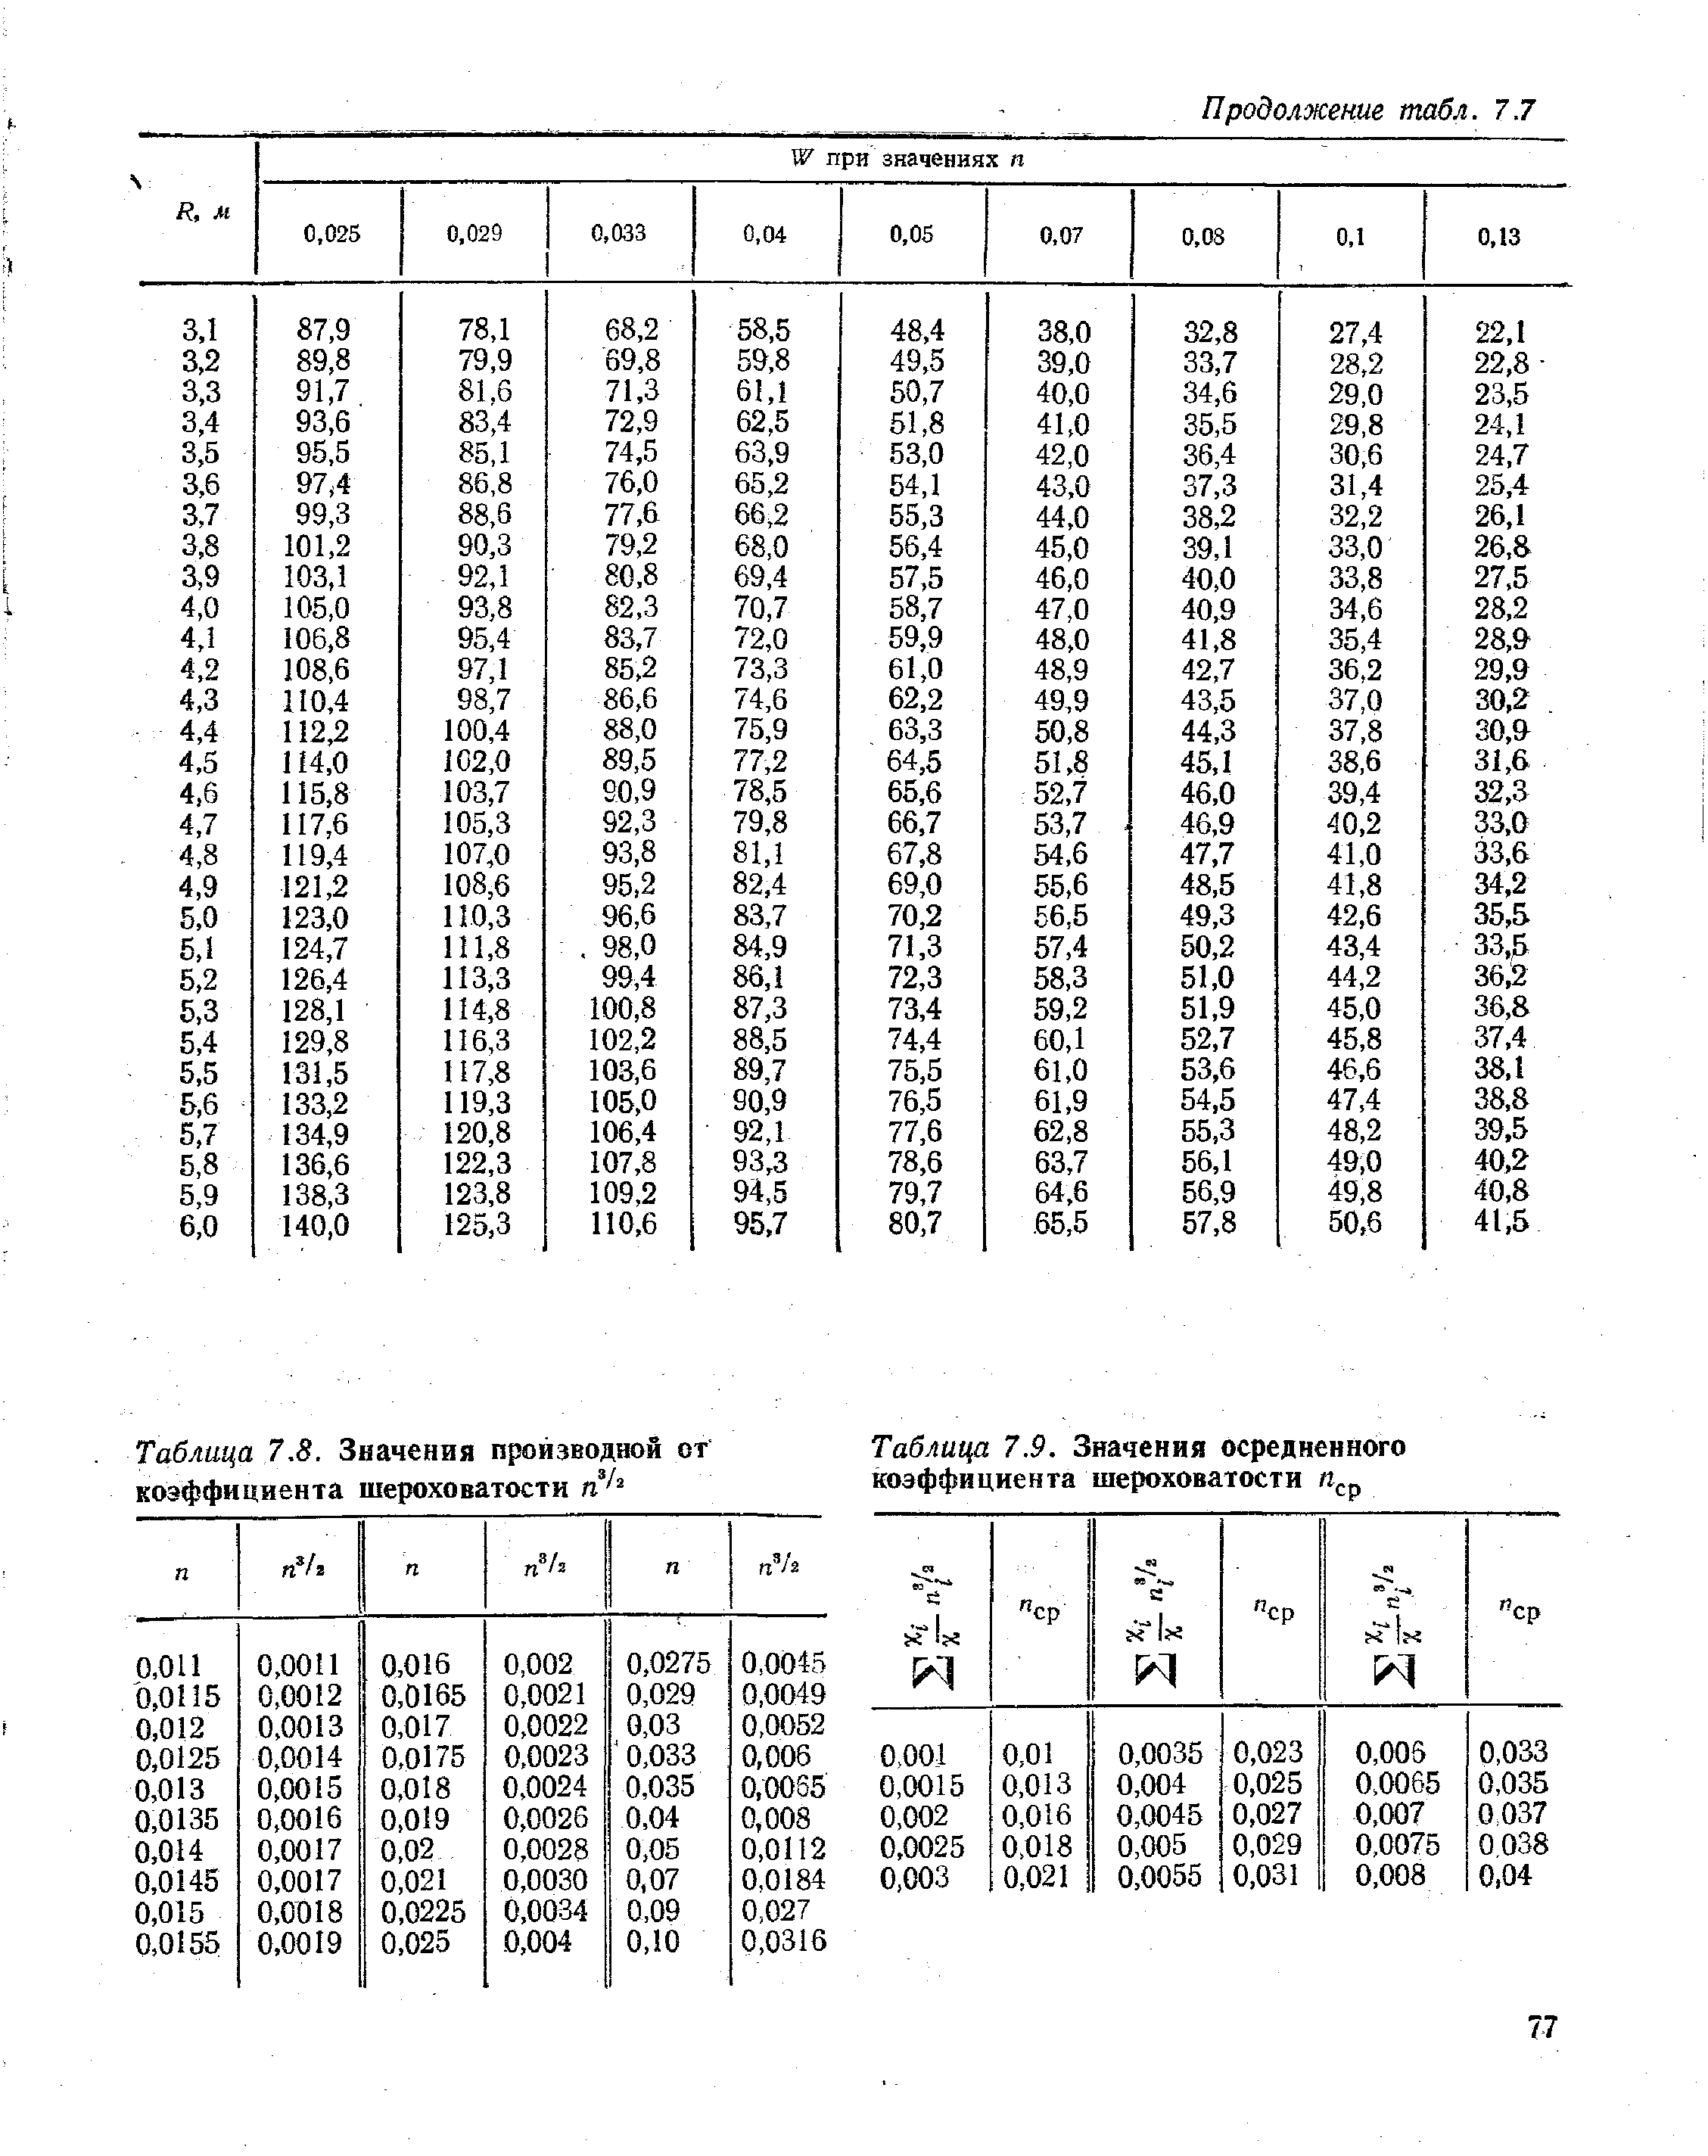 Таблица 7.9. Значения осредненного коэффициента шероховатости
